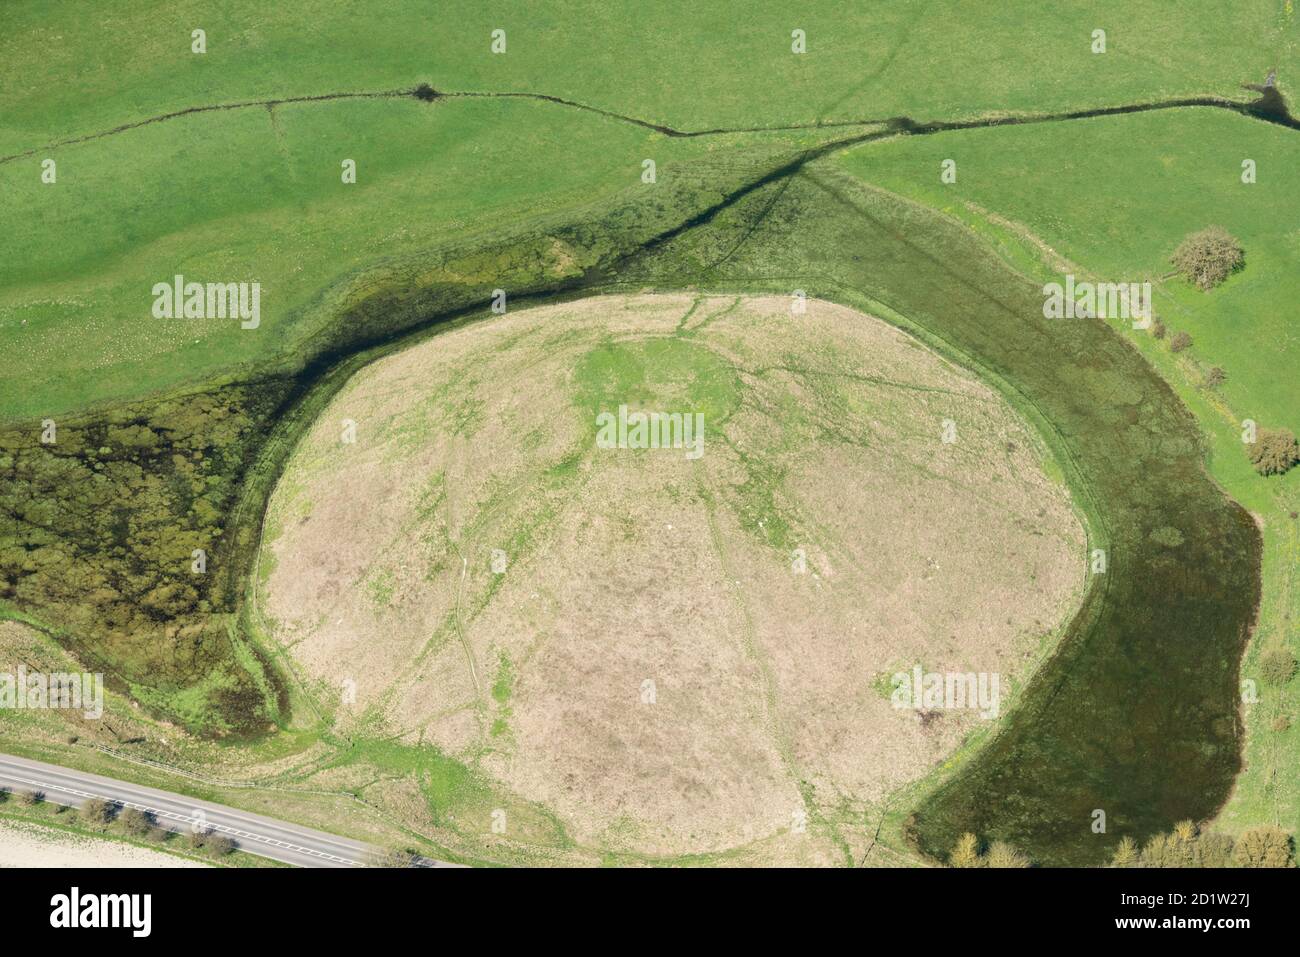 Silbury Hill, ein großer spätneolithischer monumentaler Hügel, in der Nähe von Avebury, Wiltshire, Großbritannien. Luftaufnahme. Stockfoto